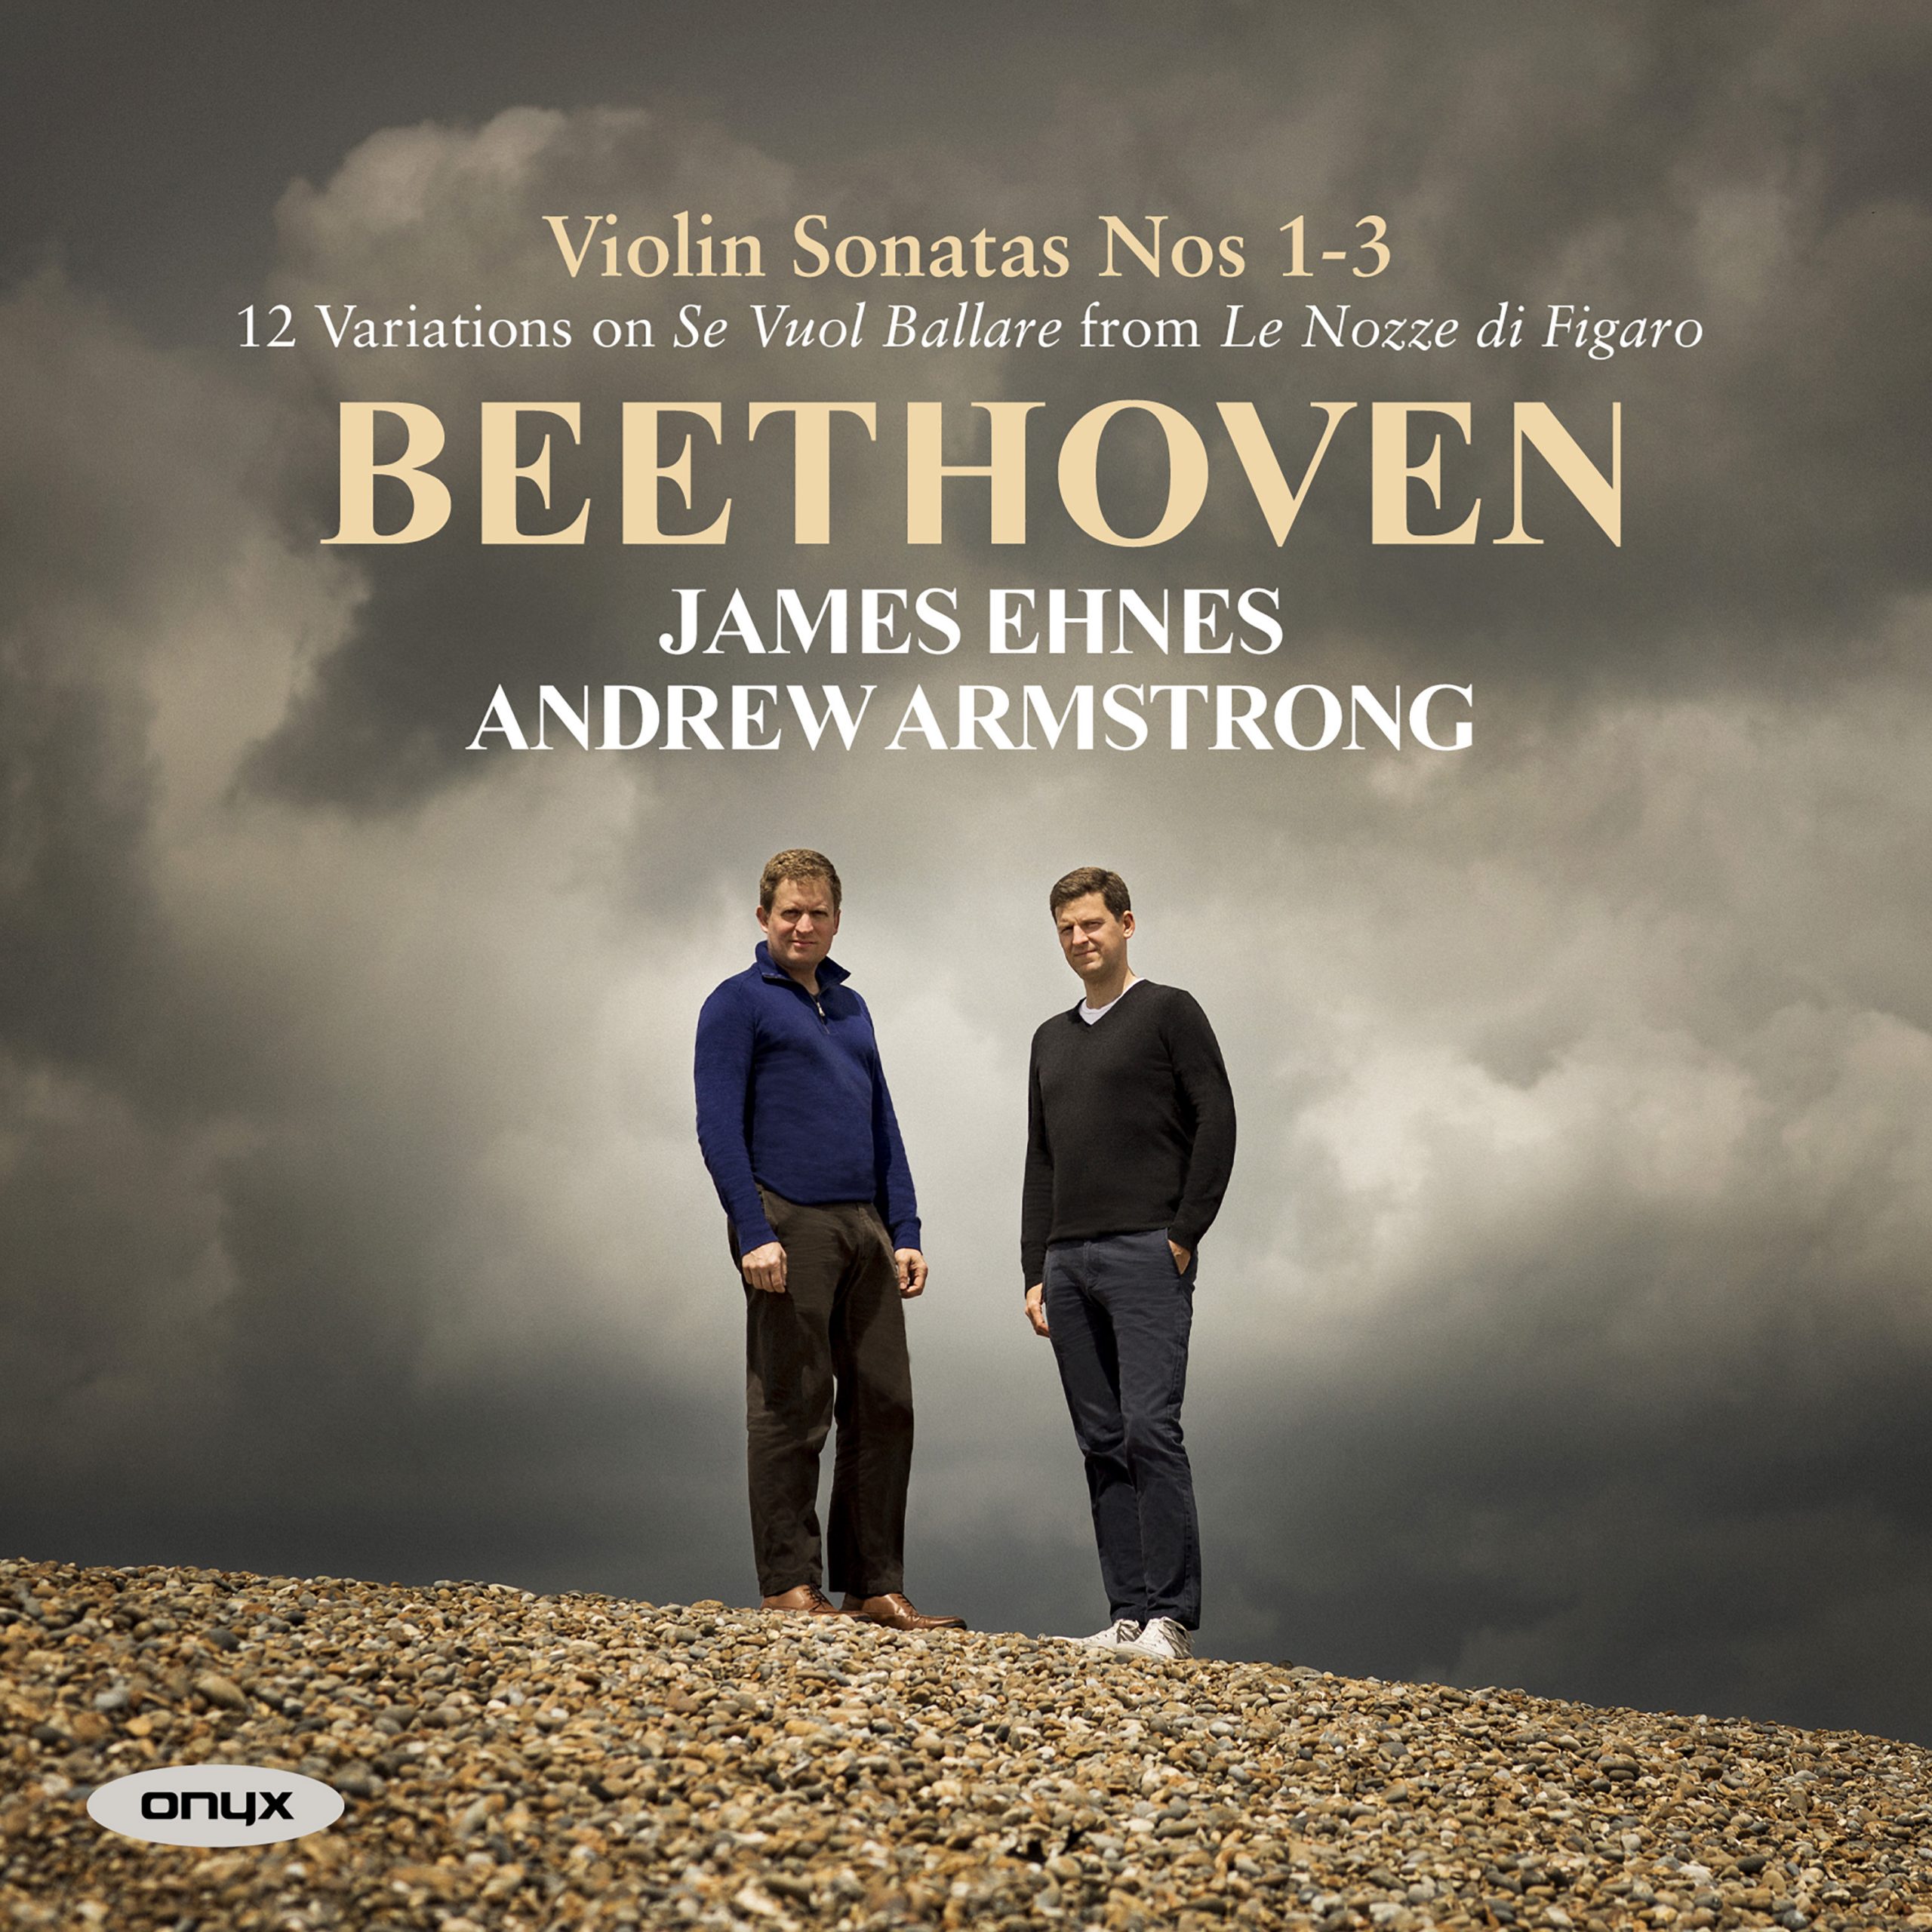 Beethoven: Violin Sonatas Nos. 1-3, Op. 12